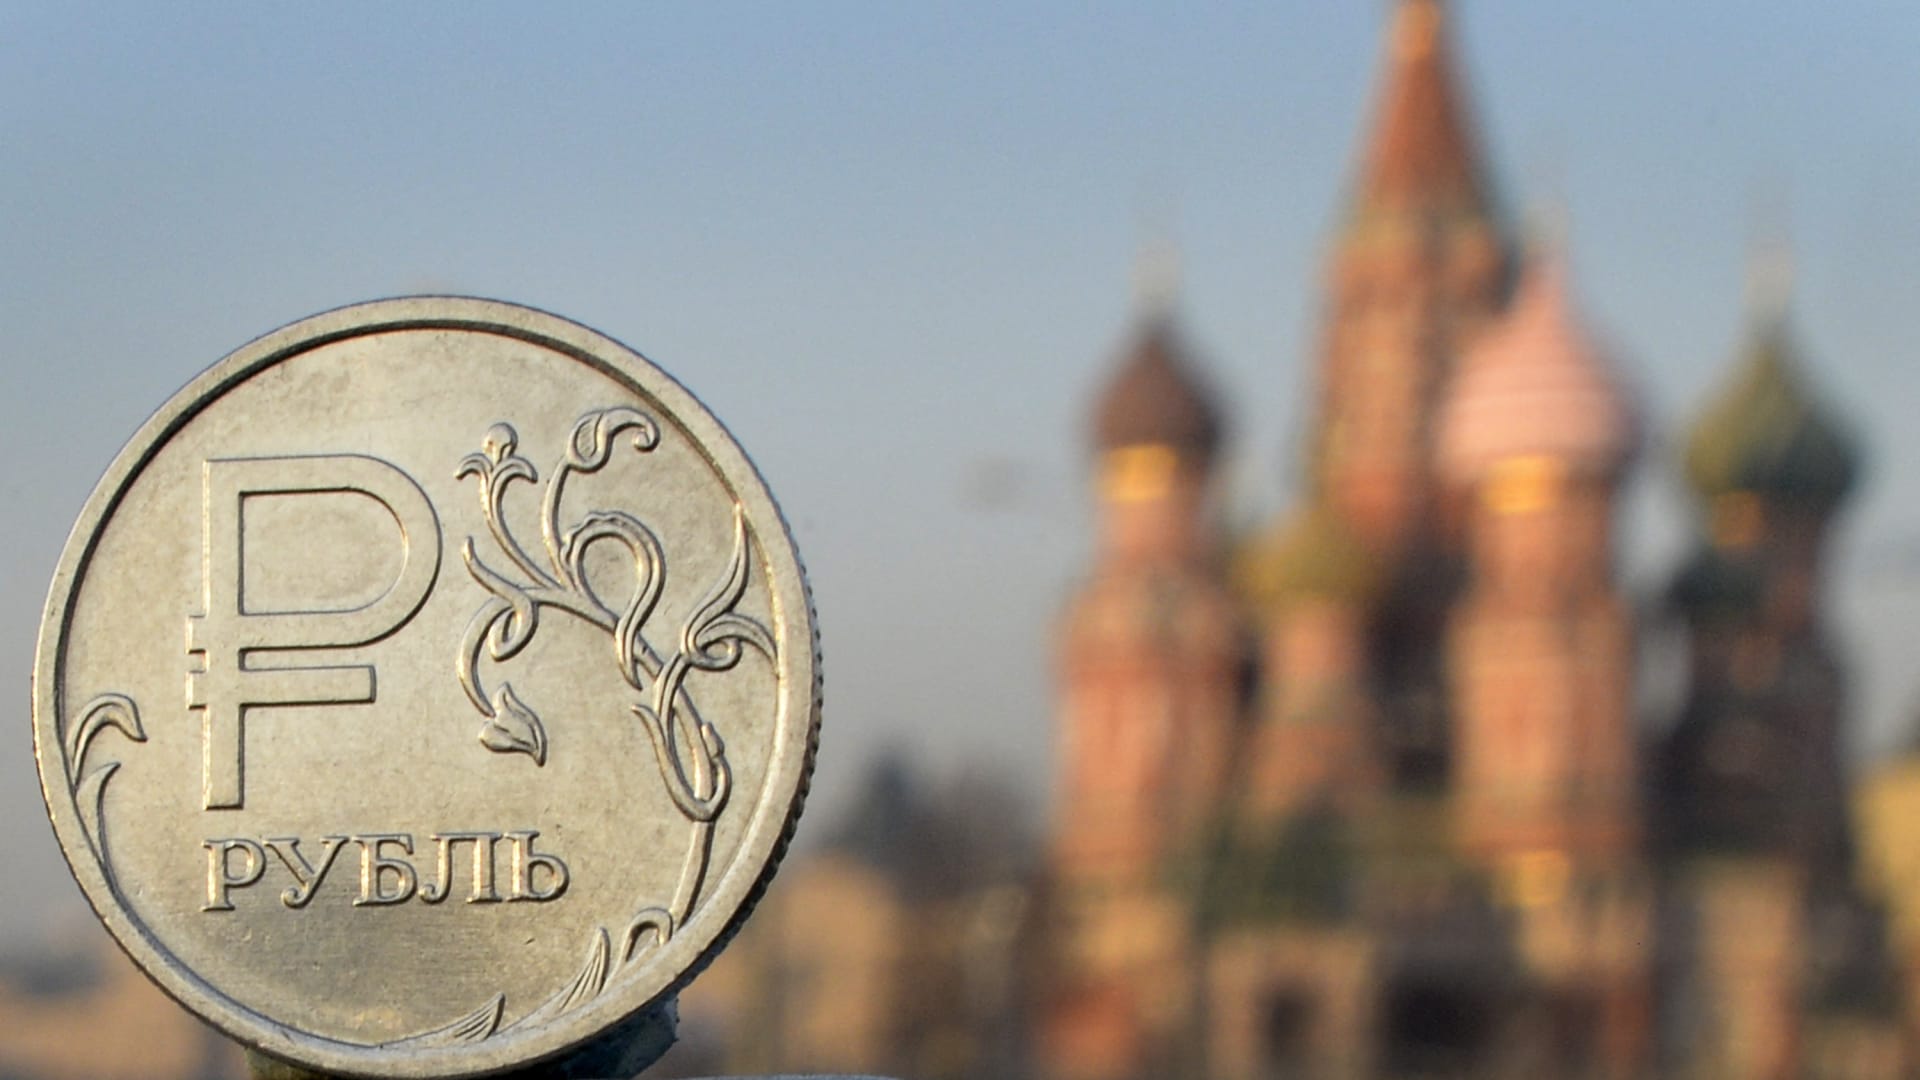 الروبل ينهار مع تدهور النظام المصرفي في روسيا